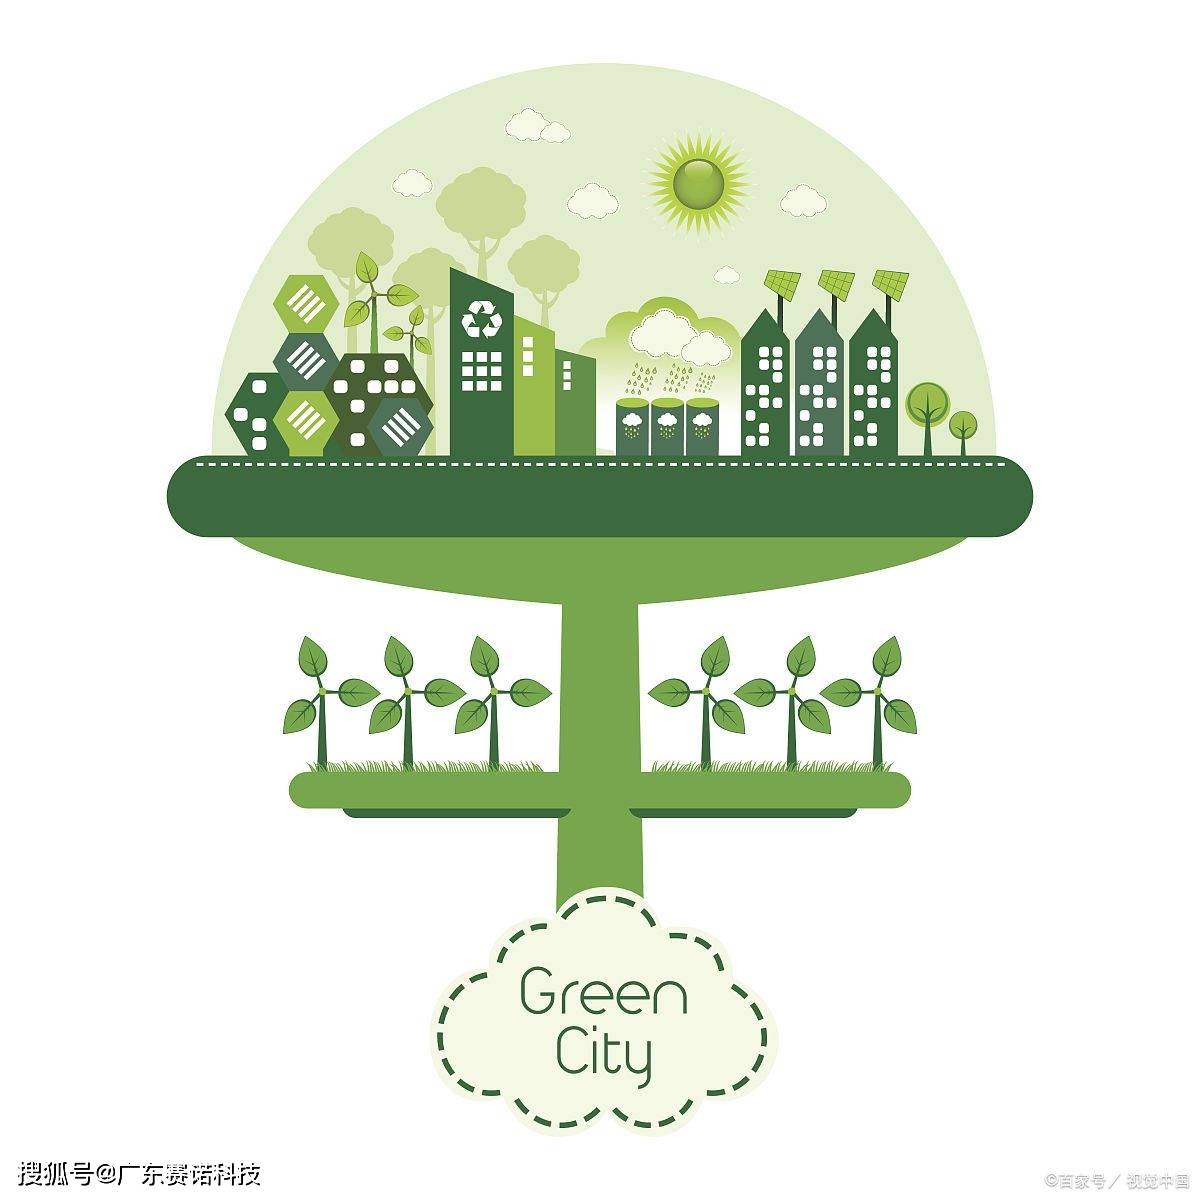 绿色智慧园区:创新科技助力城市可持续发展